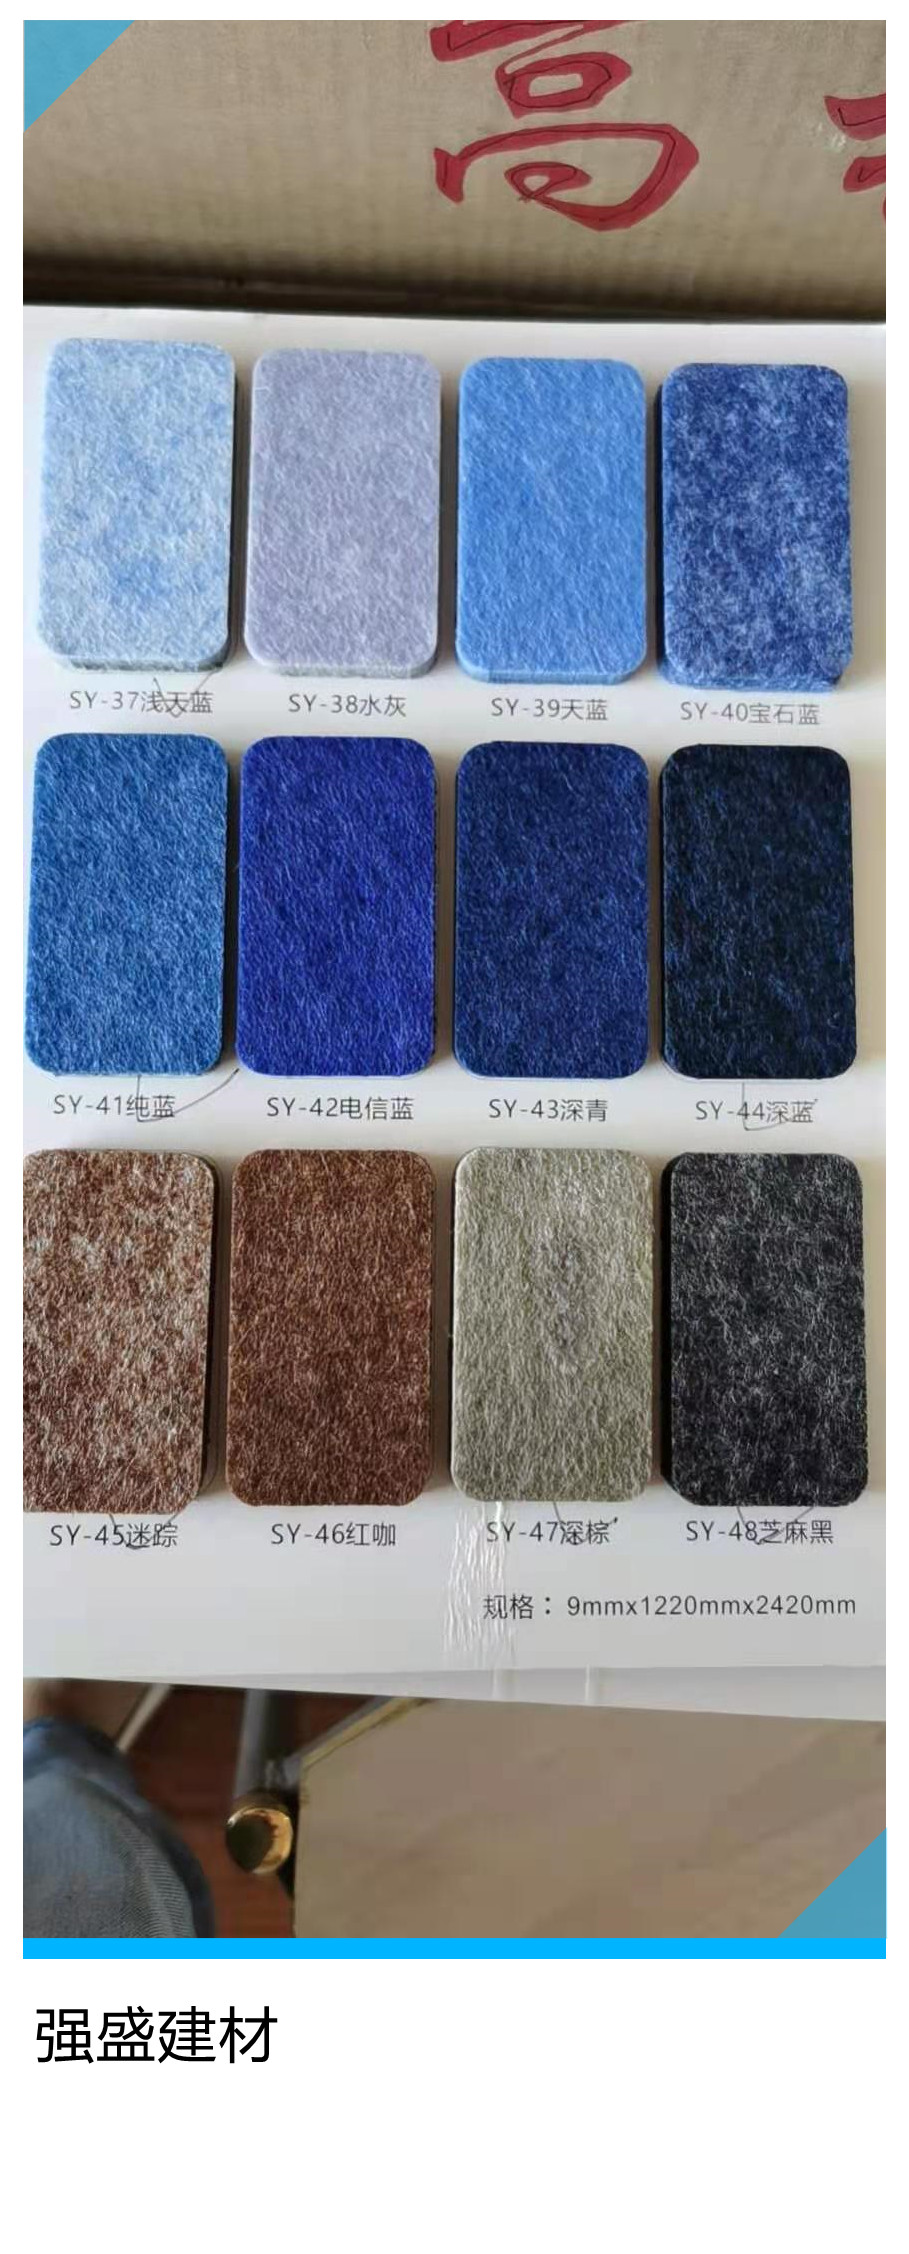 新源县彩色吸音板 聚酯纤维吸音板 吸音板规格强盛价格实惠